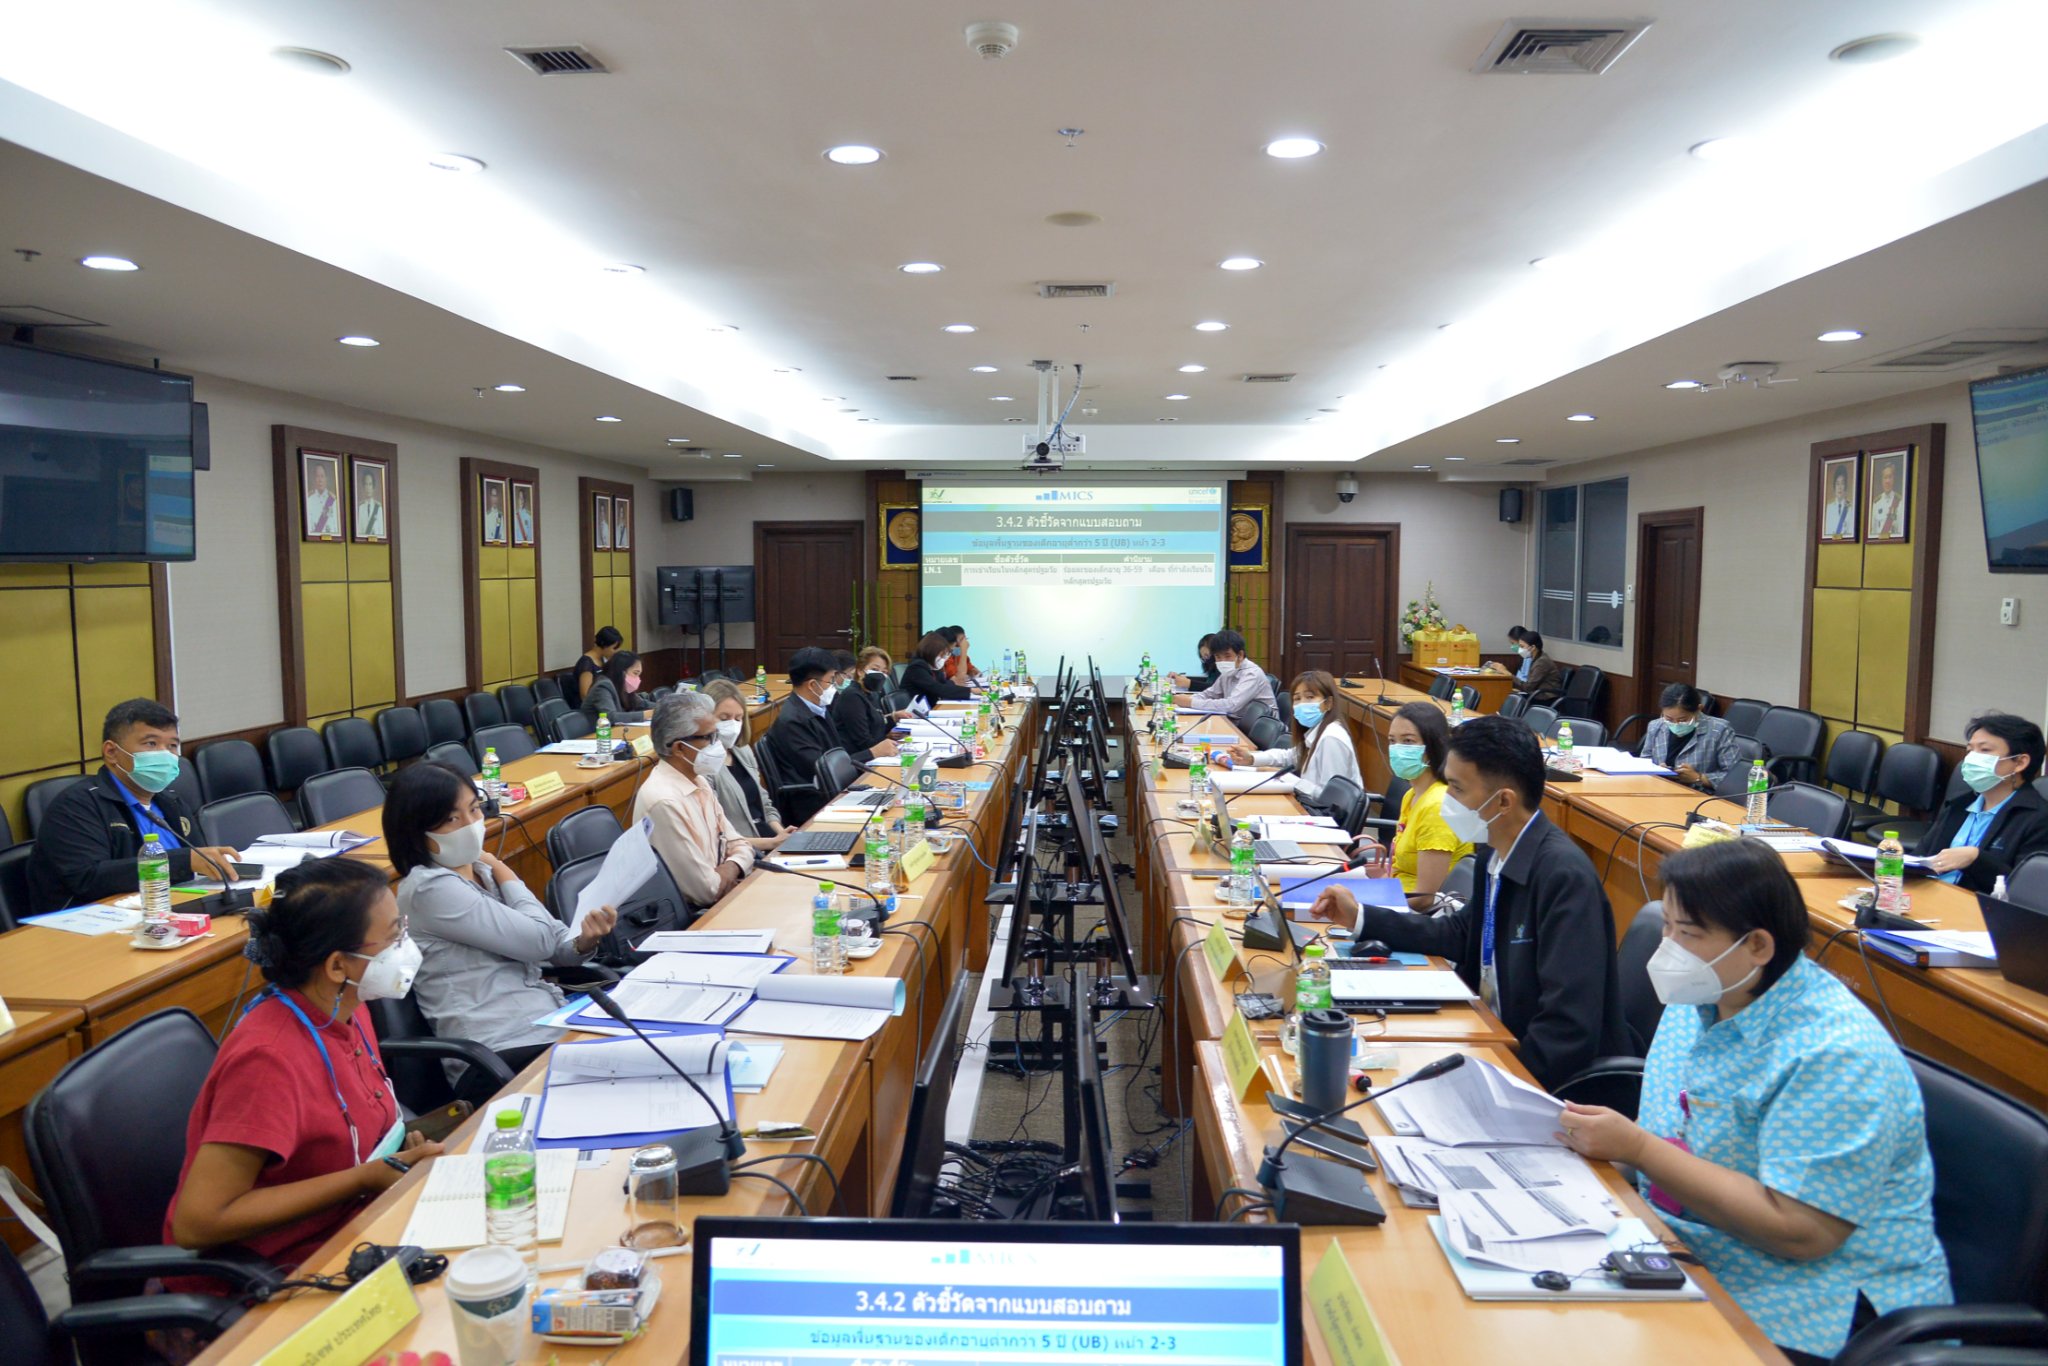 การประชุมคณะทำงานวิชาการฯ ด้านการศึกษา โครงการสำรวจสถานการณ์เด็กและสตรี ในประเทศไทย พ.ศ. 2565